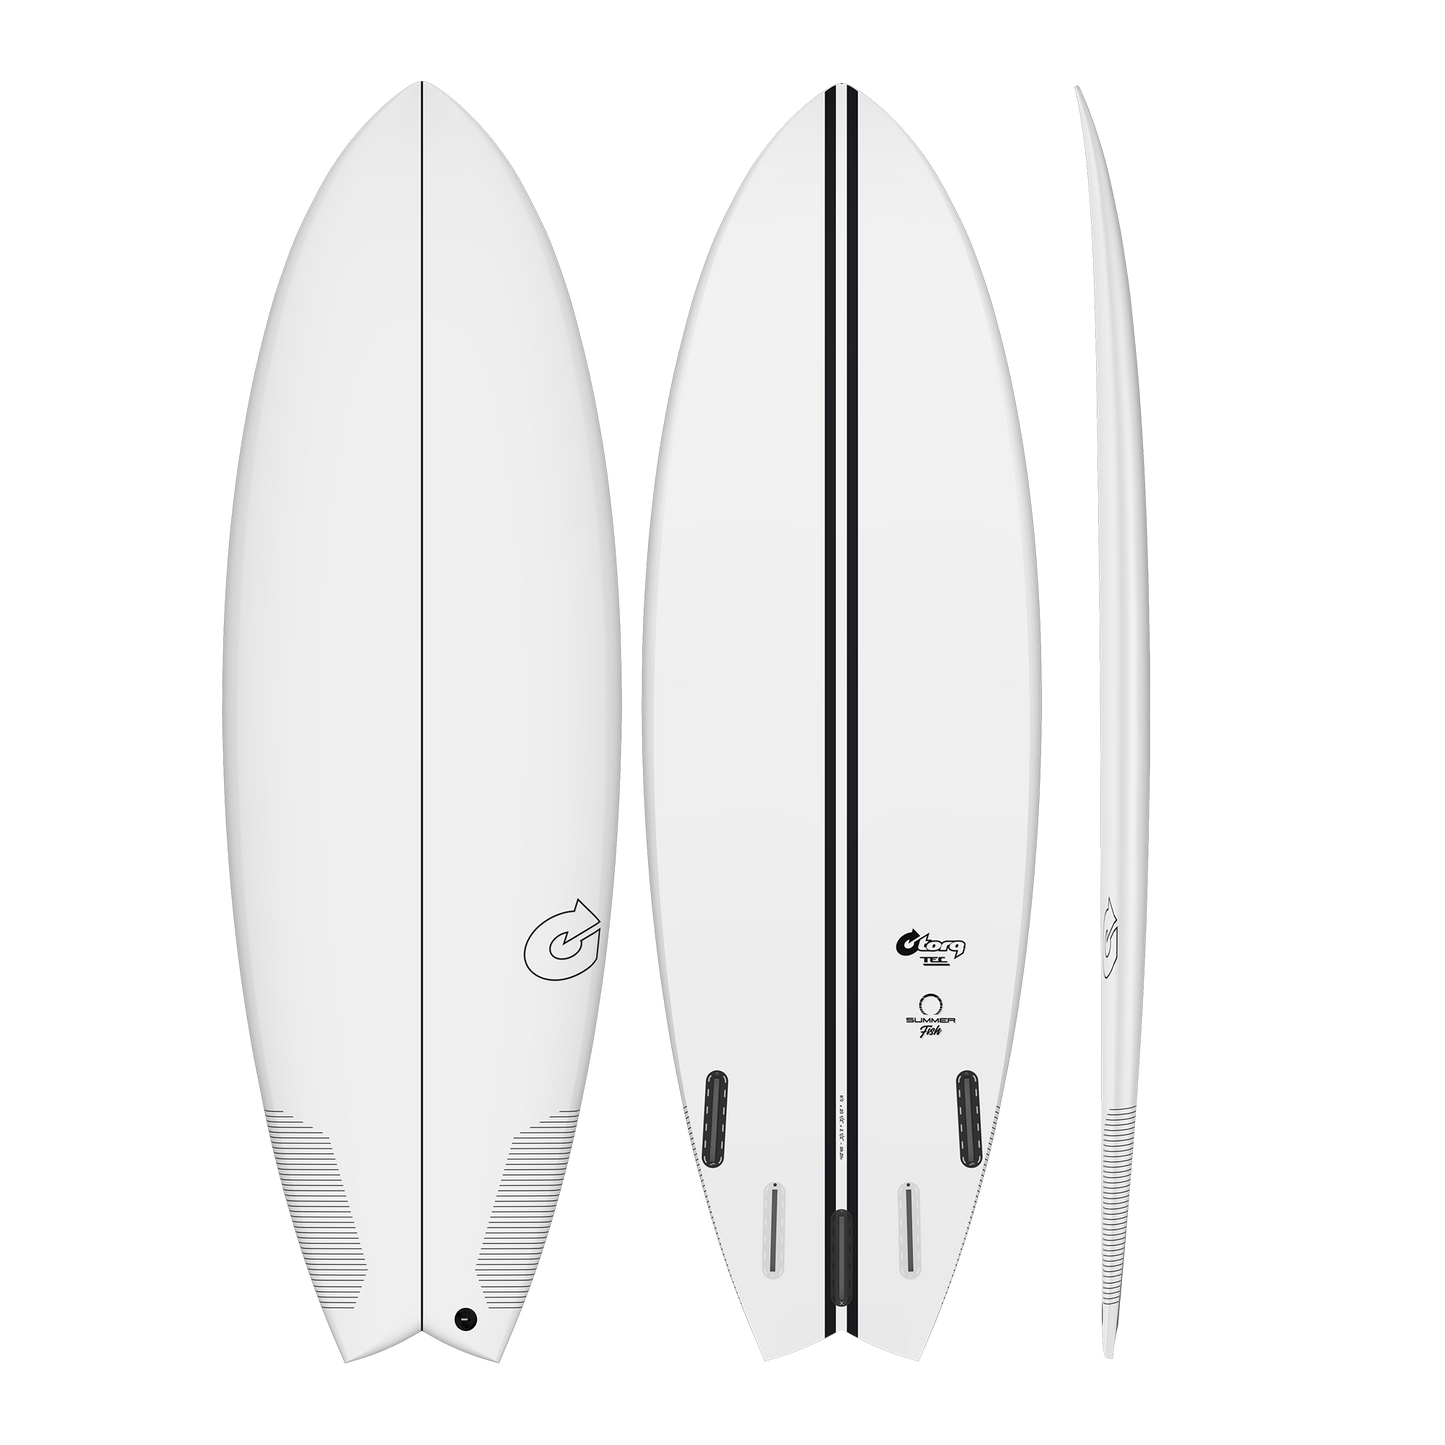 Torq TEC Summer 5 Fish Epoxy Surfboard 5’10 x 21 3/4” x 2 5/8” - 38 ltr Surfboard